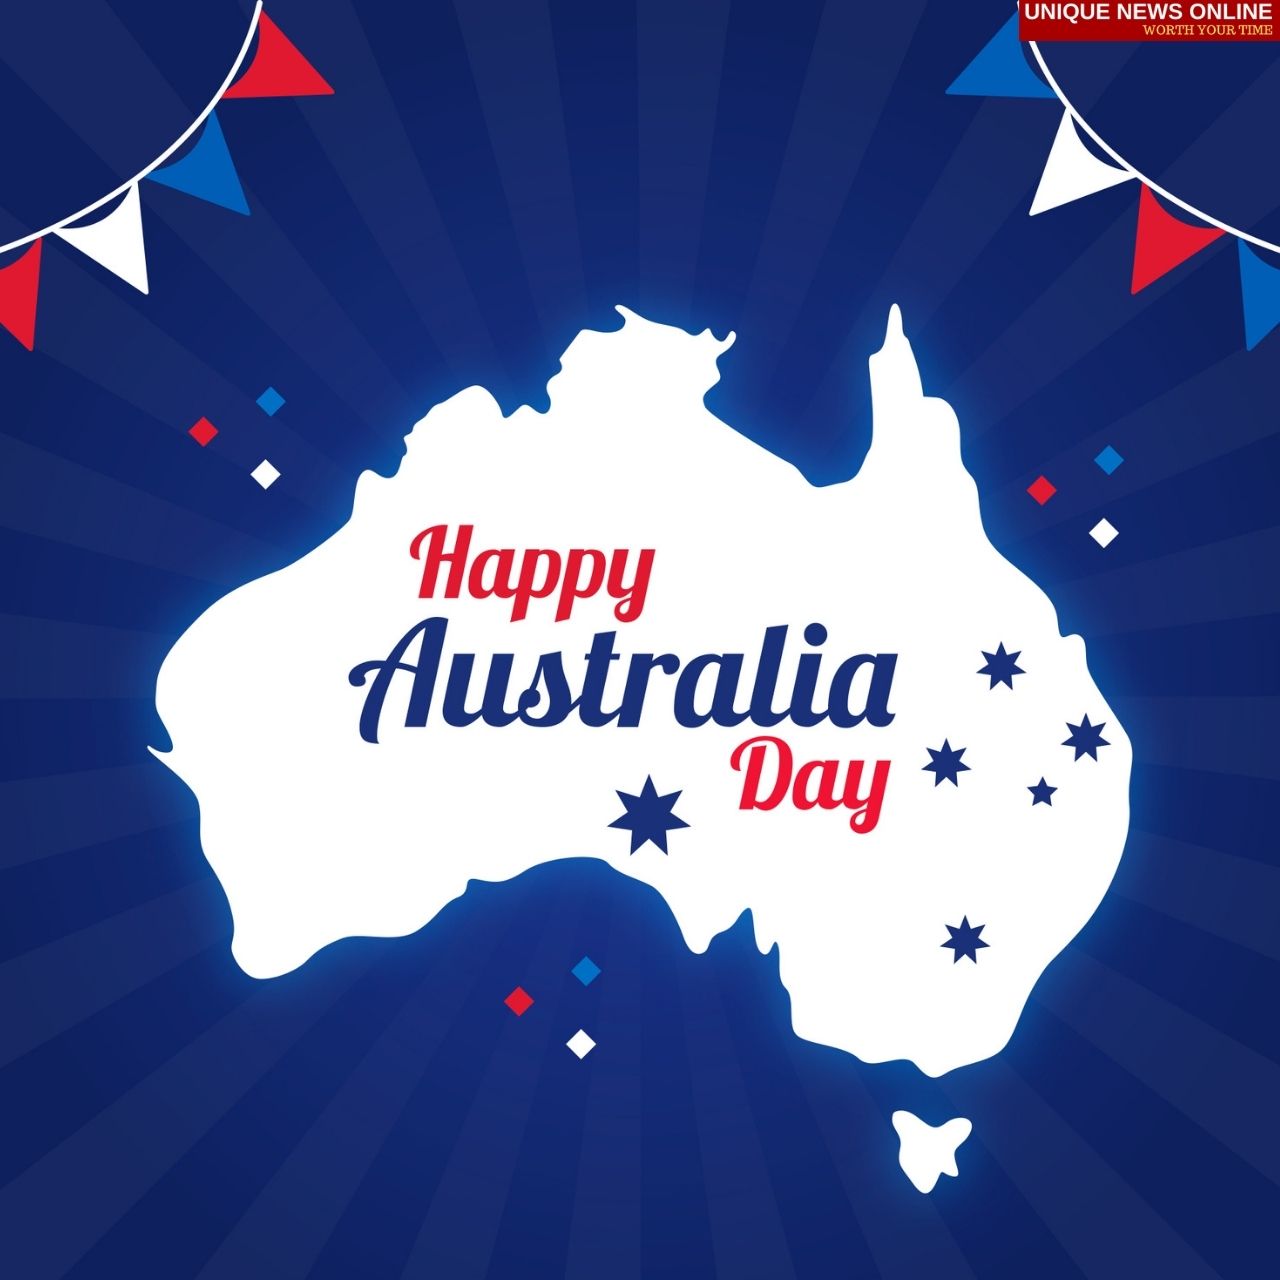 ऑस्ट्रेलिया दिन 2022 शुभेच्छा, HD प्रतिमा, कोट्स, संदेश, शुभेच्छा, संदेश, आपल्या मित्रांना आणि कुटुंबियांना शुभेच्छा देण्यासाठी म्हणी